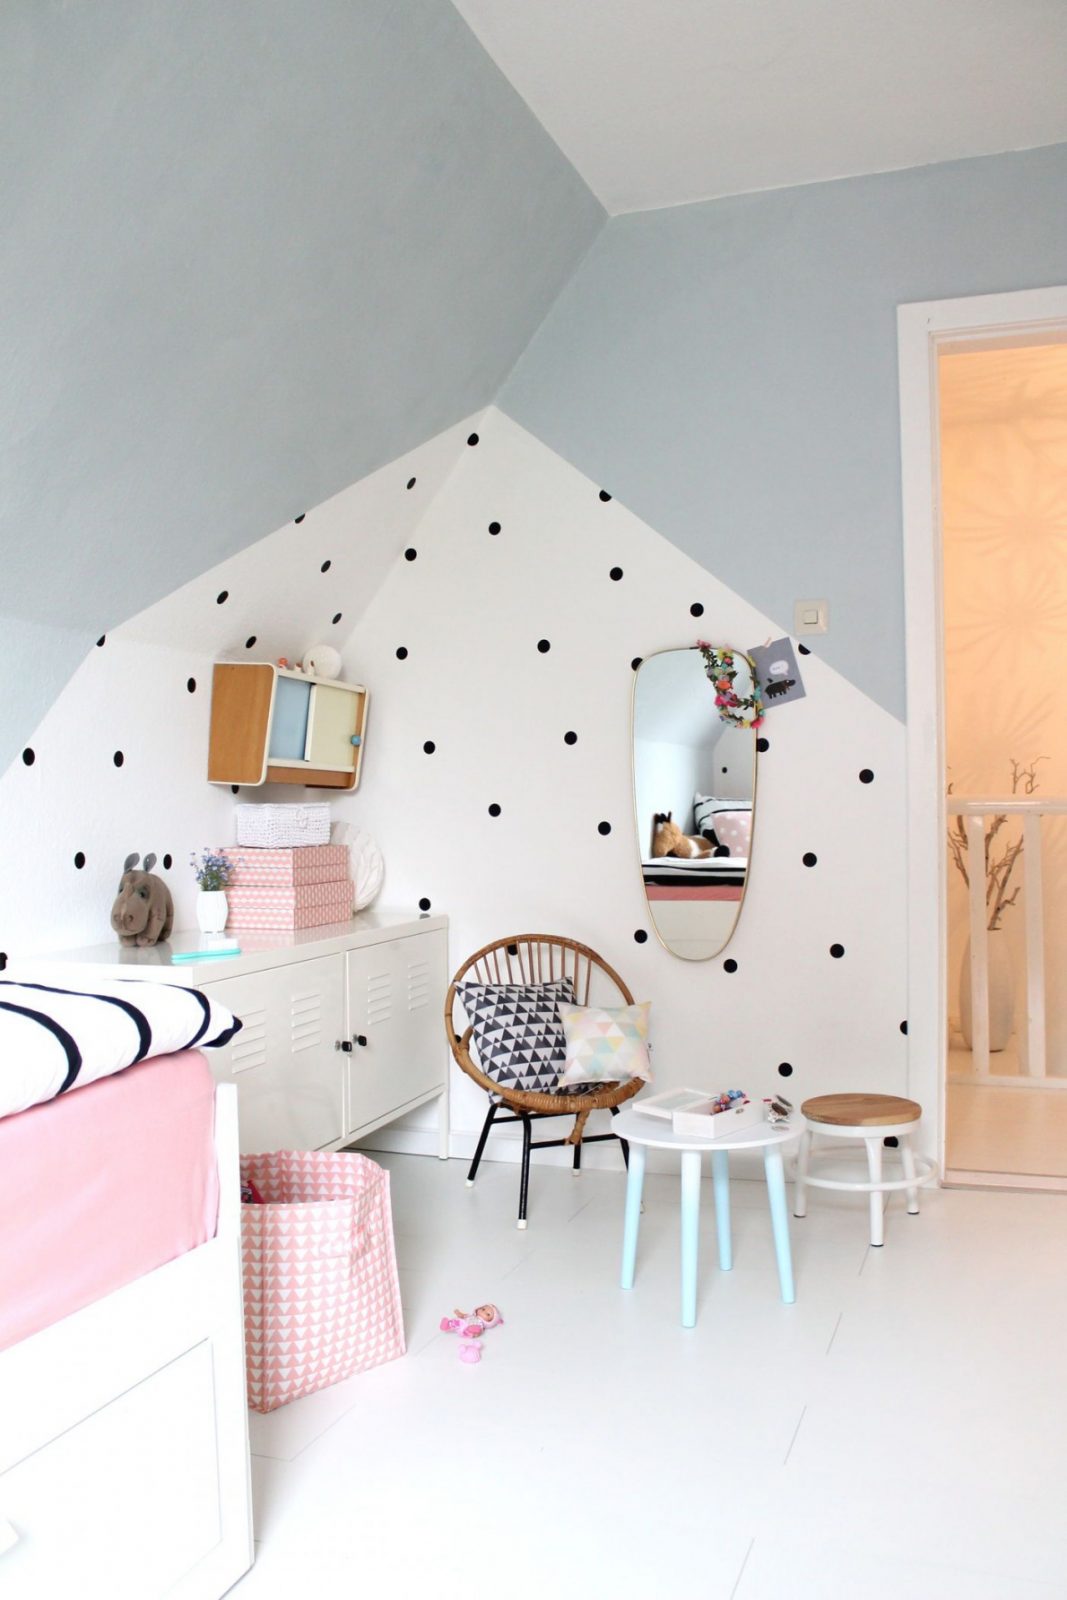 Die Besten Ideen Für Die Wandgestaltung Im Kinderzimmer von Babyzimmer Wände Gestalten Ideen Bild